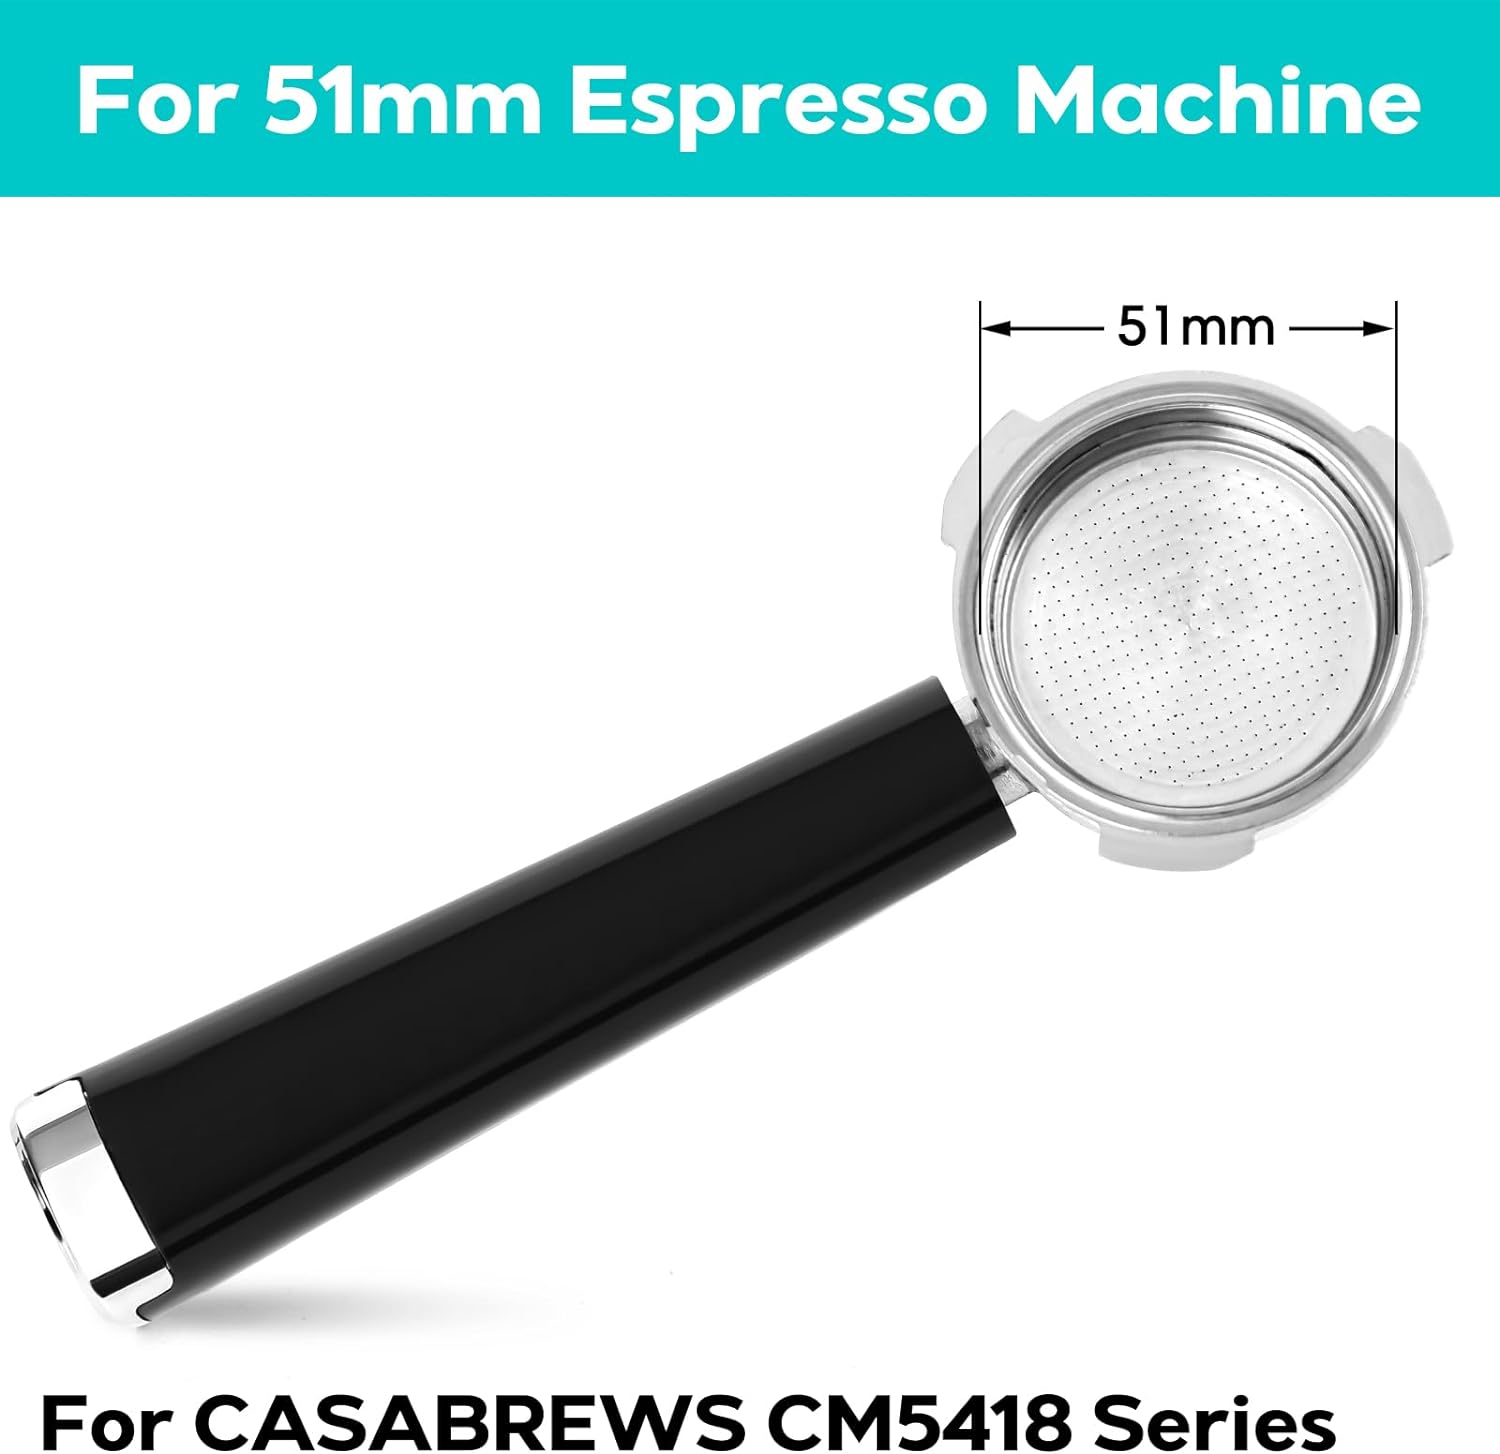 CASABREWS 51mm Portafilter Set for Espresso Machine CM5418 Series, 3 Ears Espresso Filter Holder with 51mm Filter Baskets